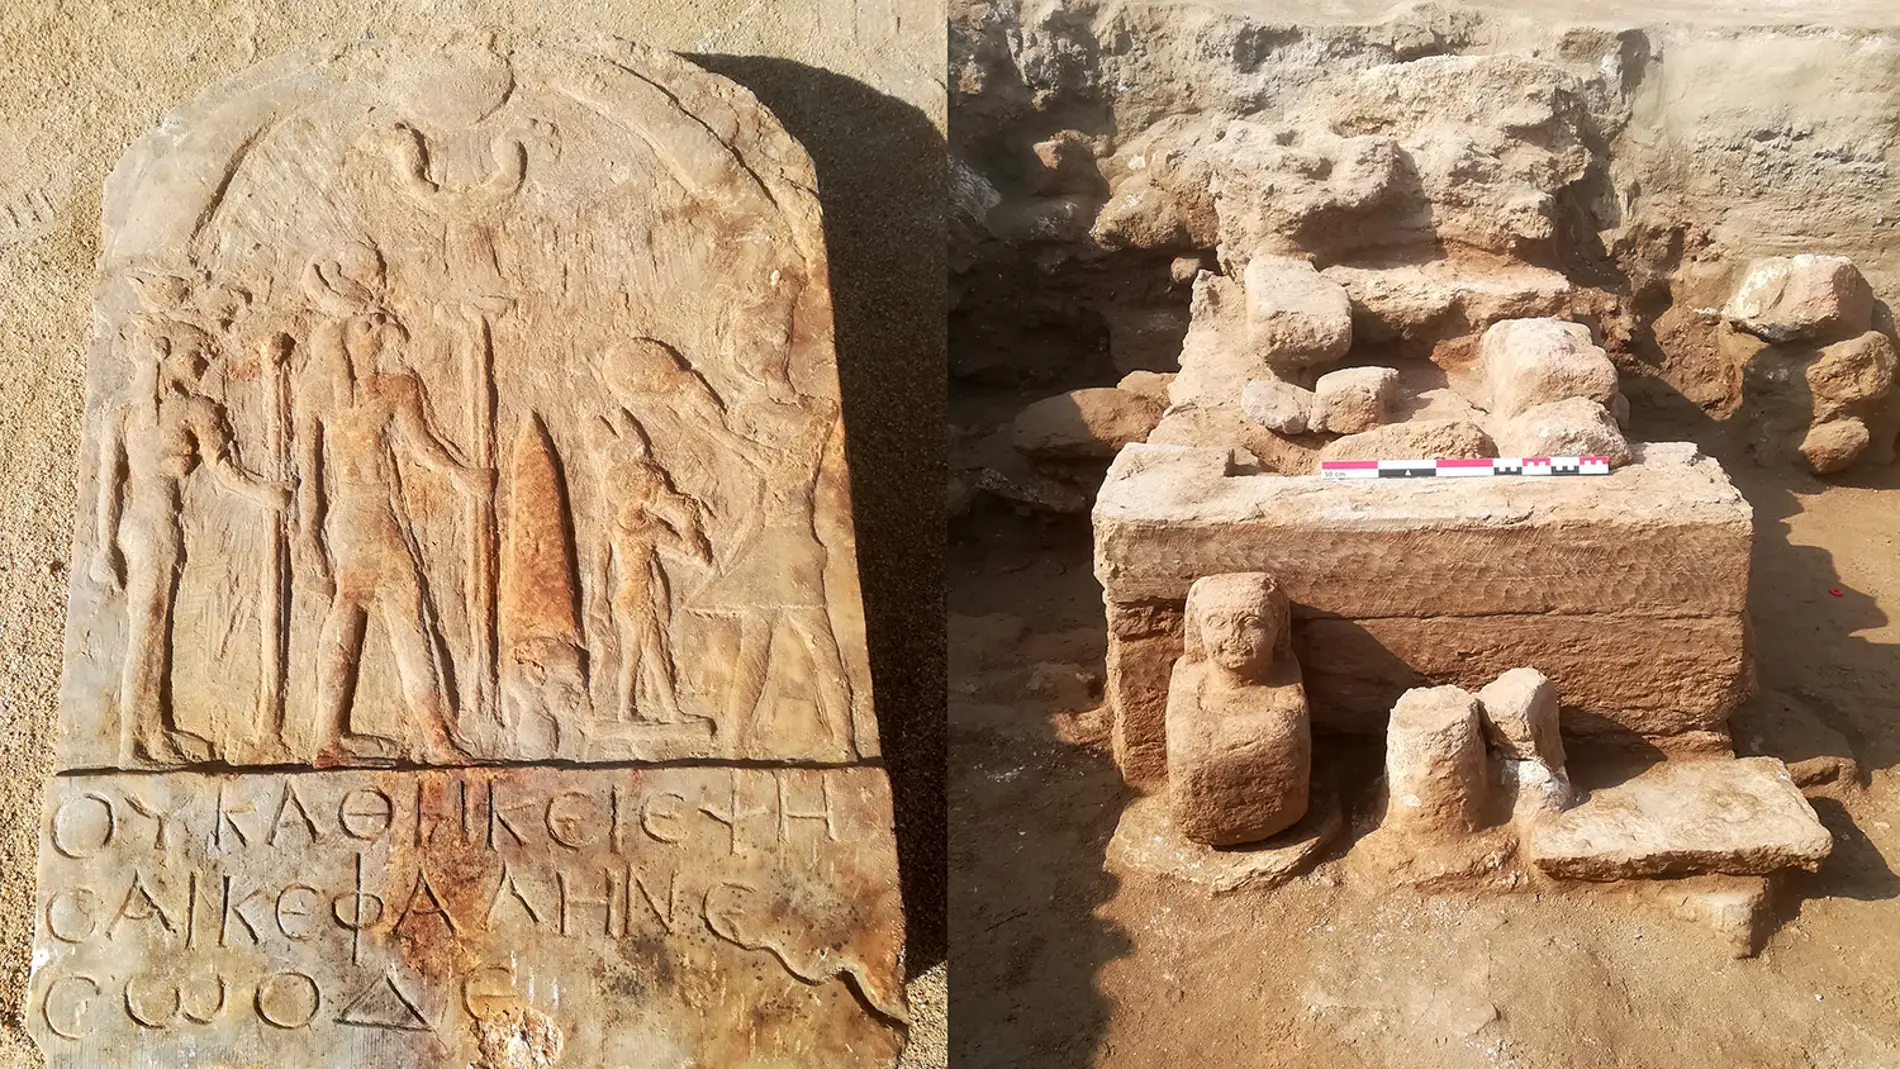 Estela con inscripción y pedestal con estatua cúbica del yacimiento